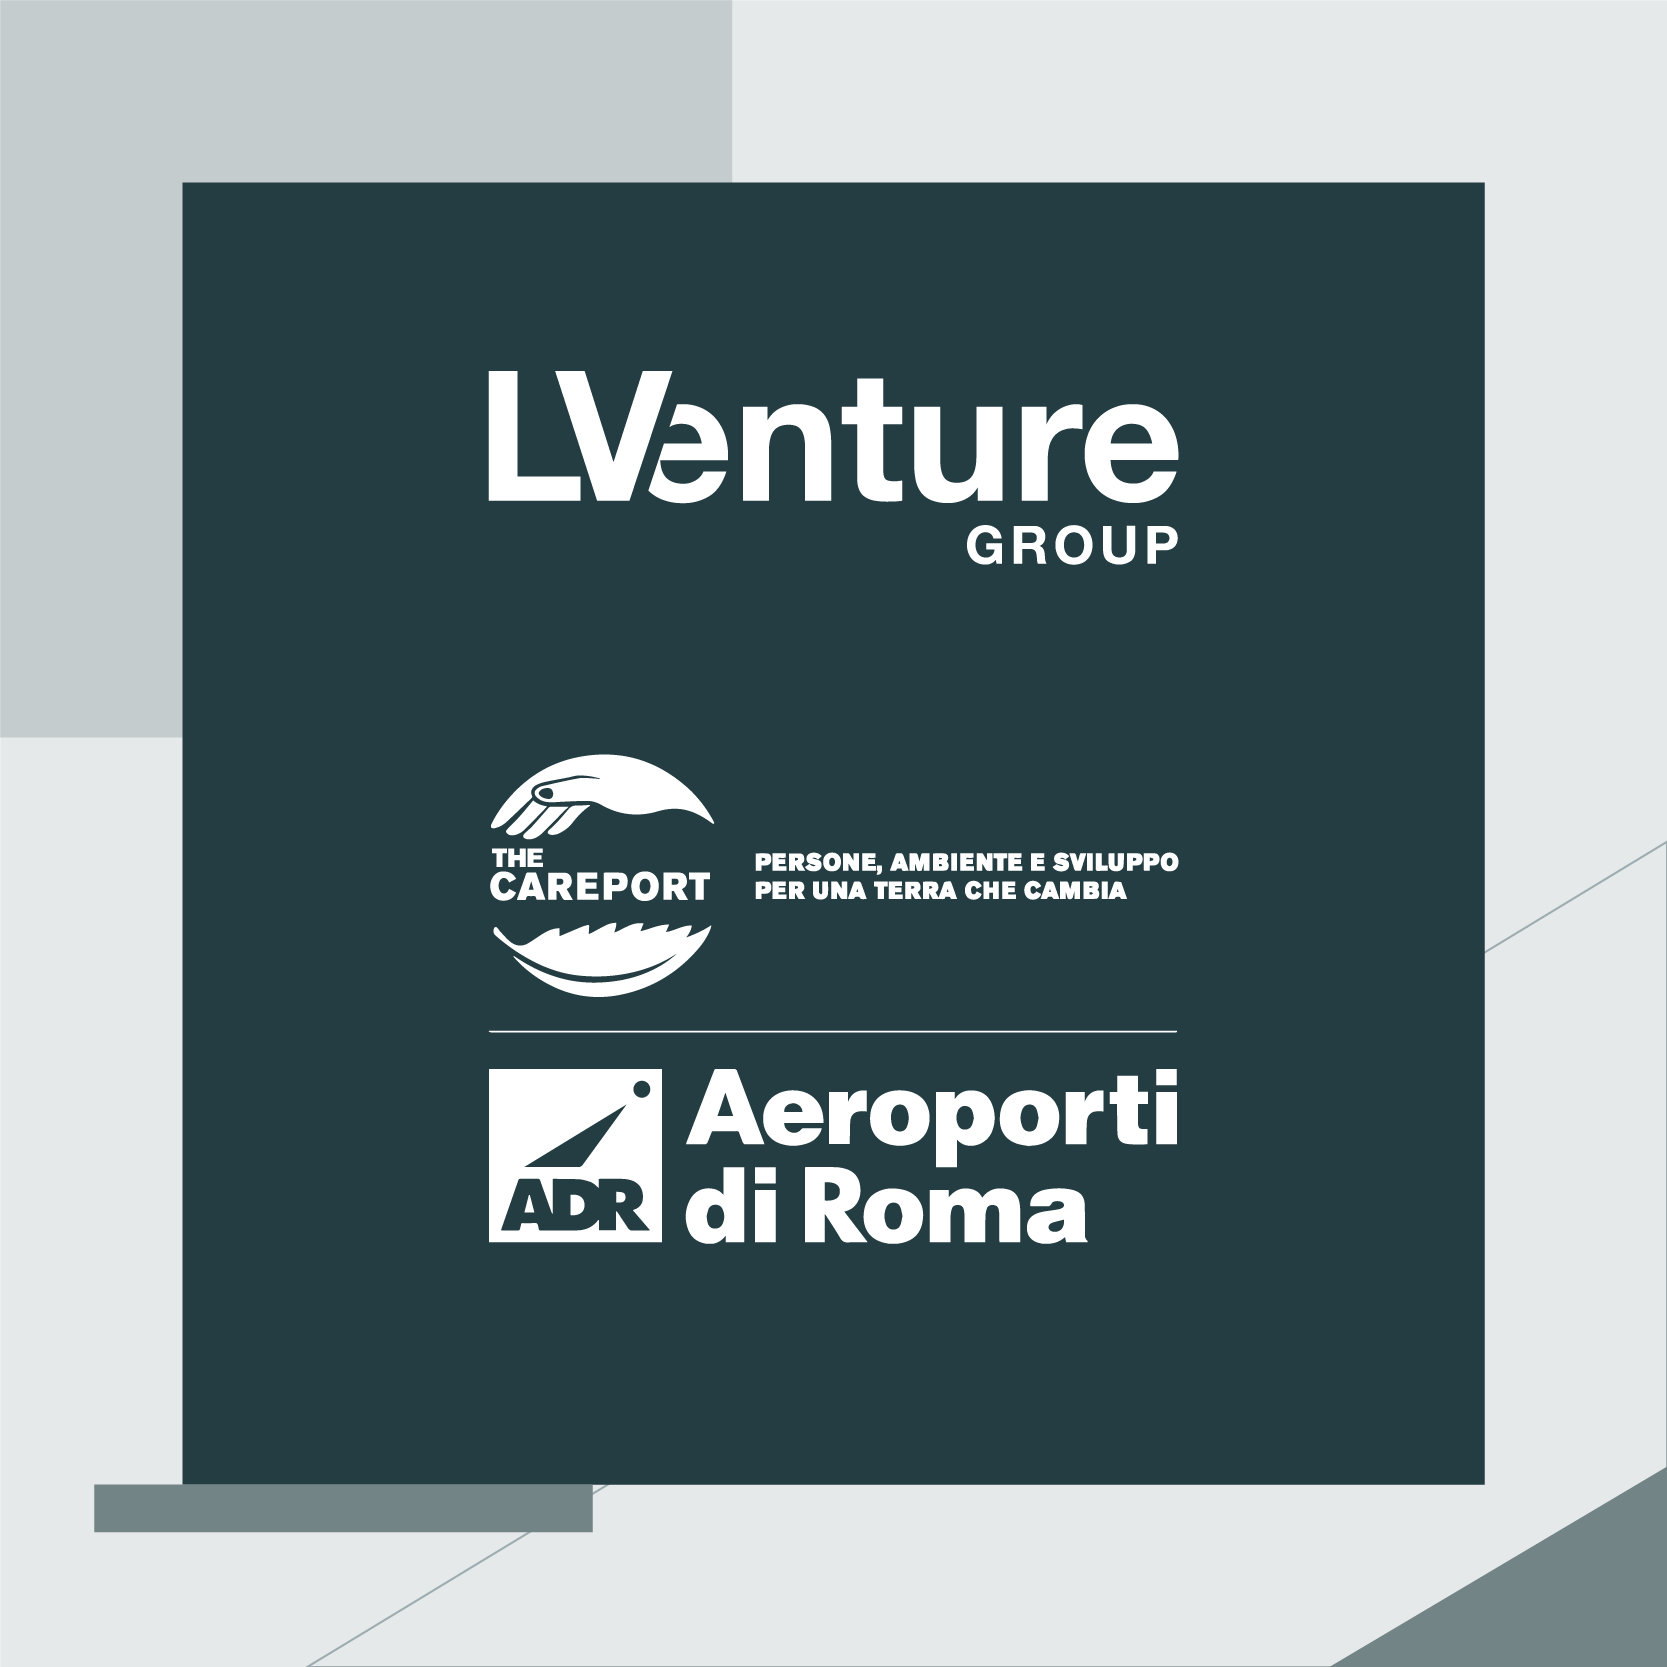 Aeroporti di Roma e LVenture Group lanciano il primo programma di incubazione aeroportuale in Italia